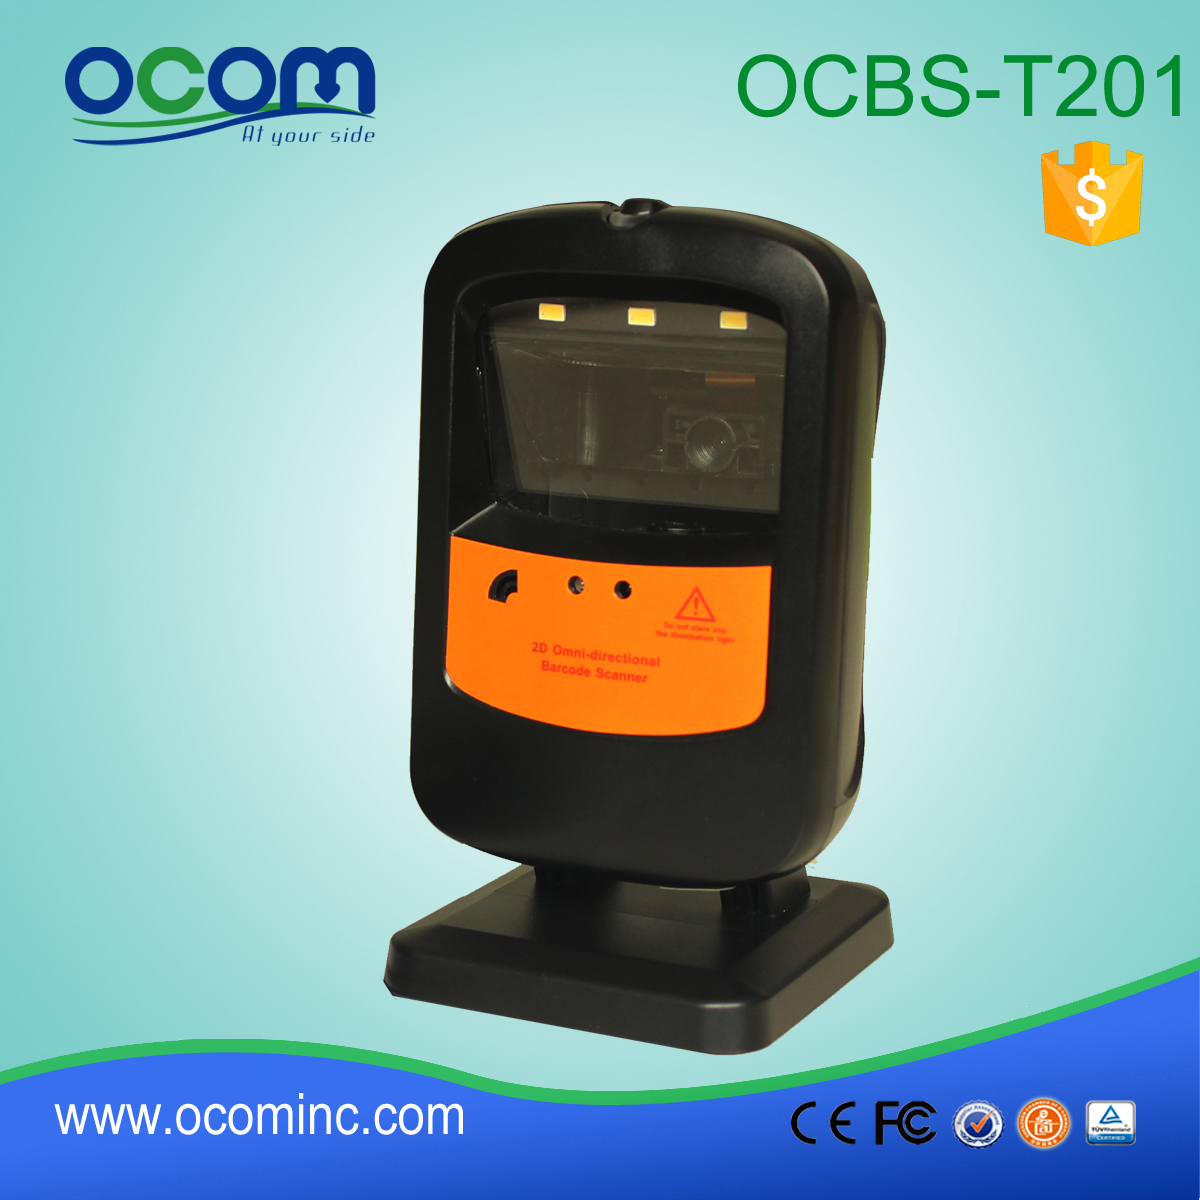 OCBS-T201: arma barcode scanner qr, código de barras escáner proveedores